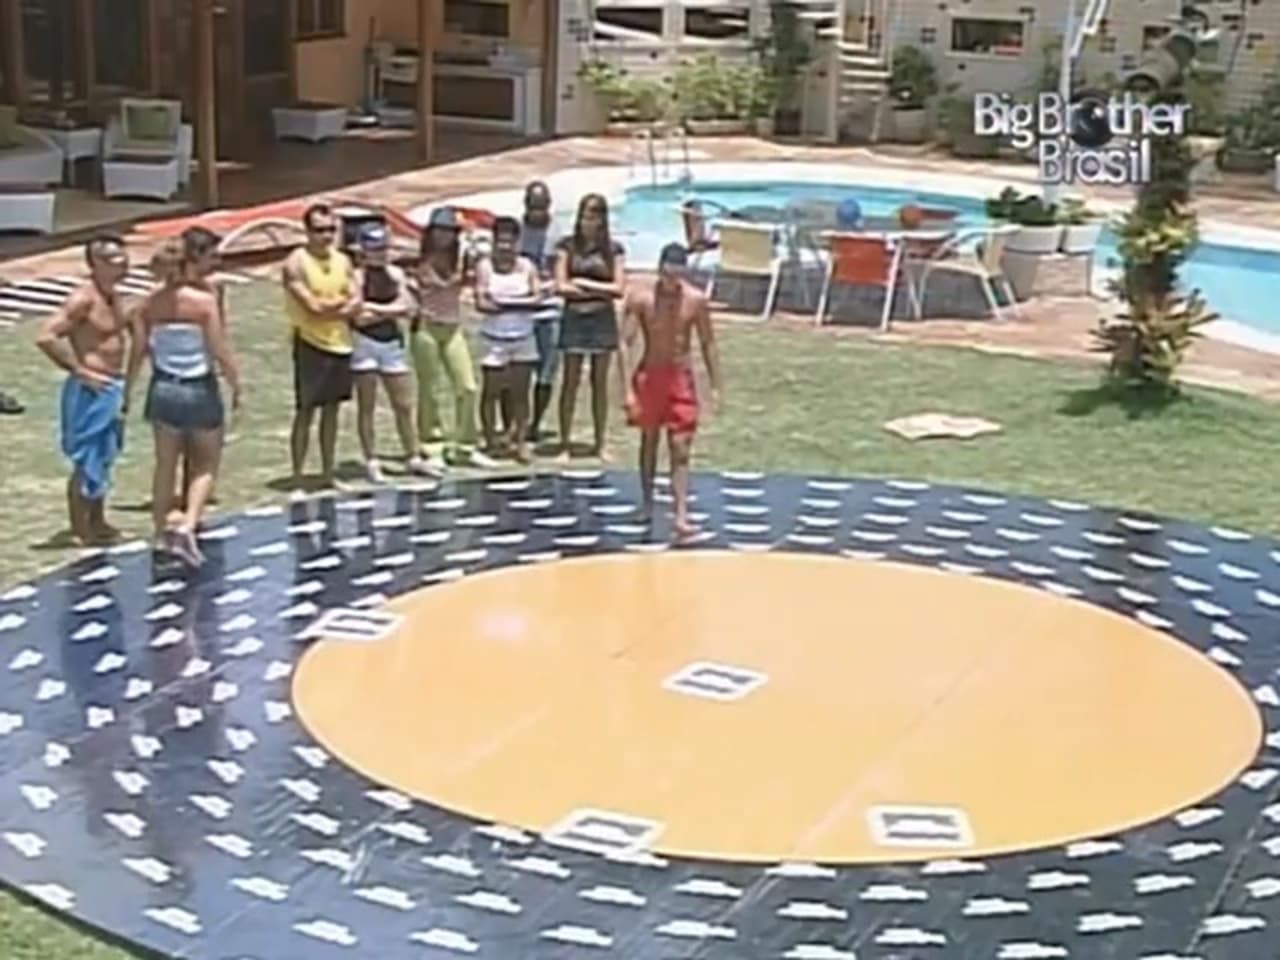 Big Brother Brasil - Season 4 Episode 32 : Episode 32